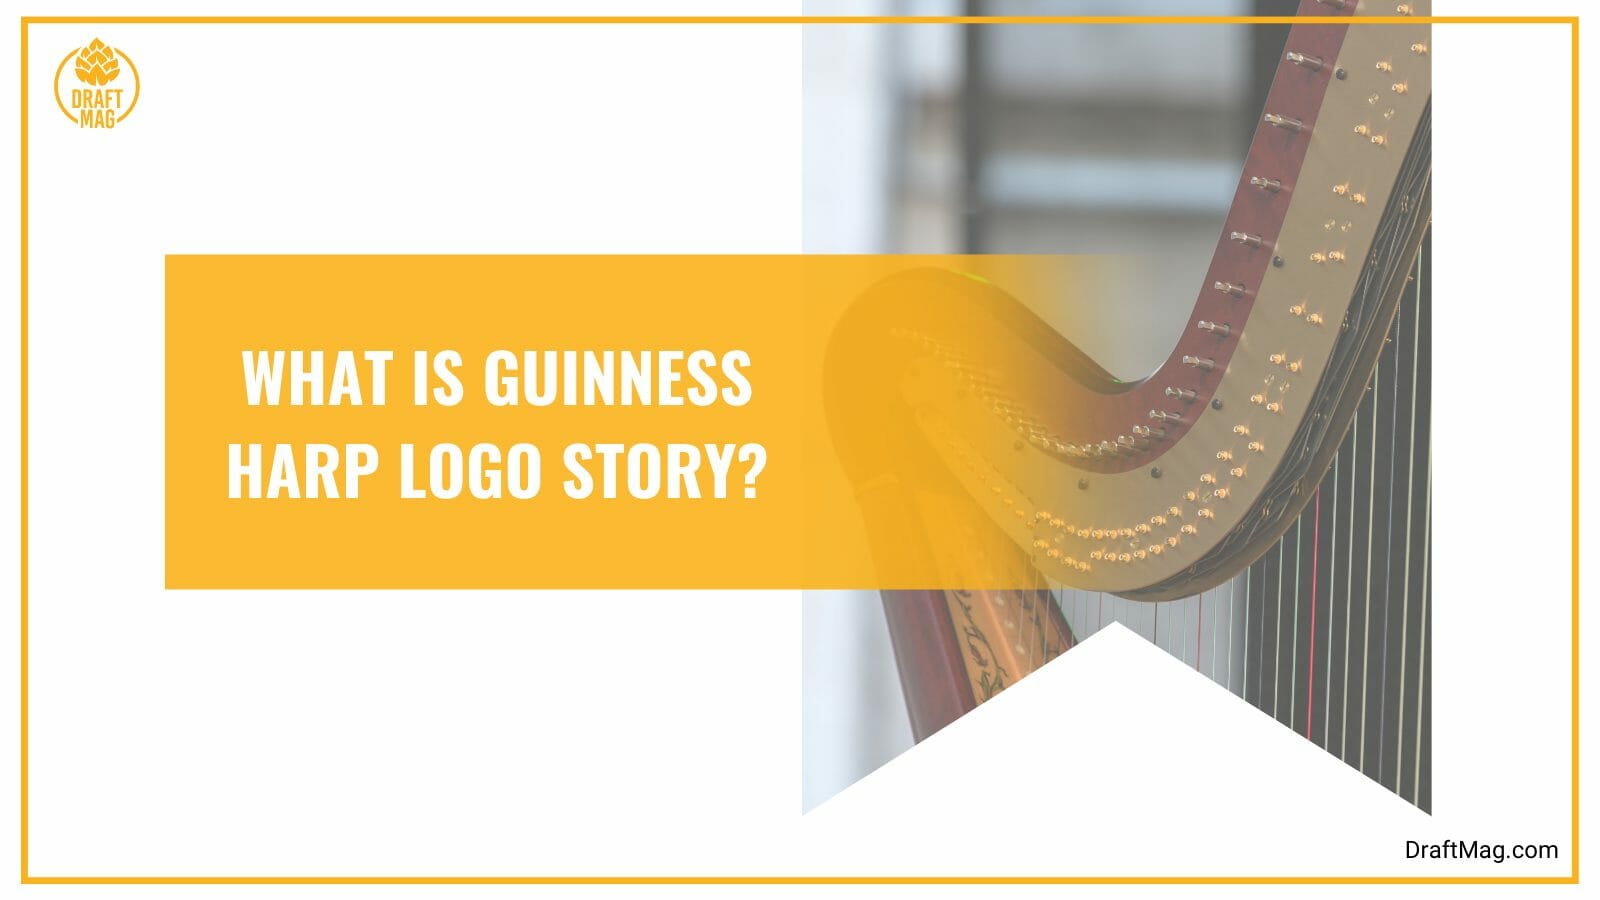 History of guinness harp logo